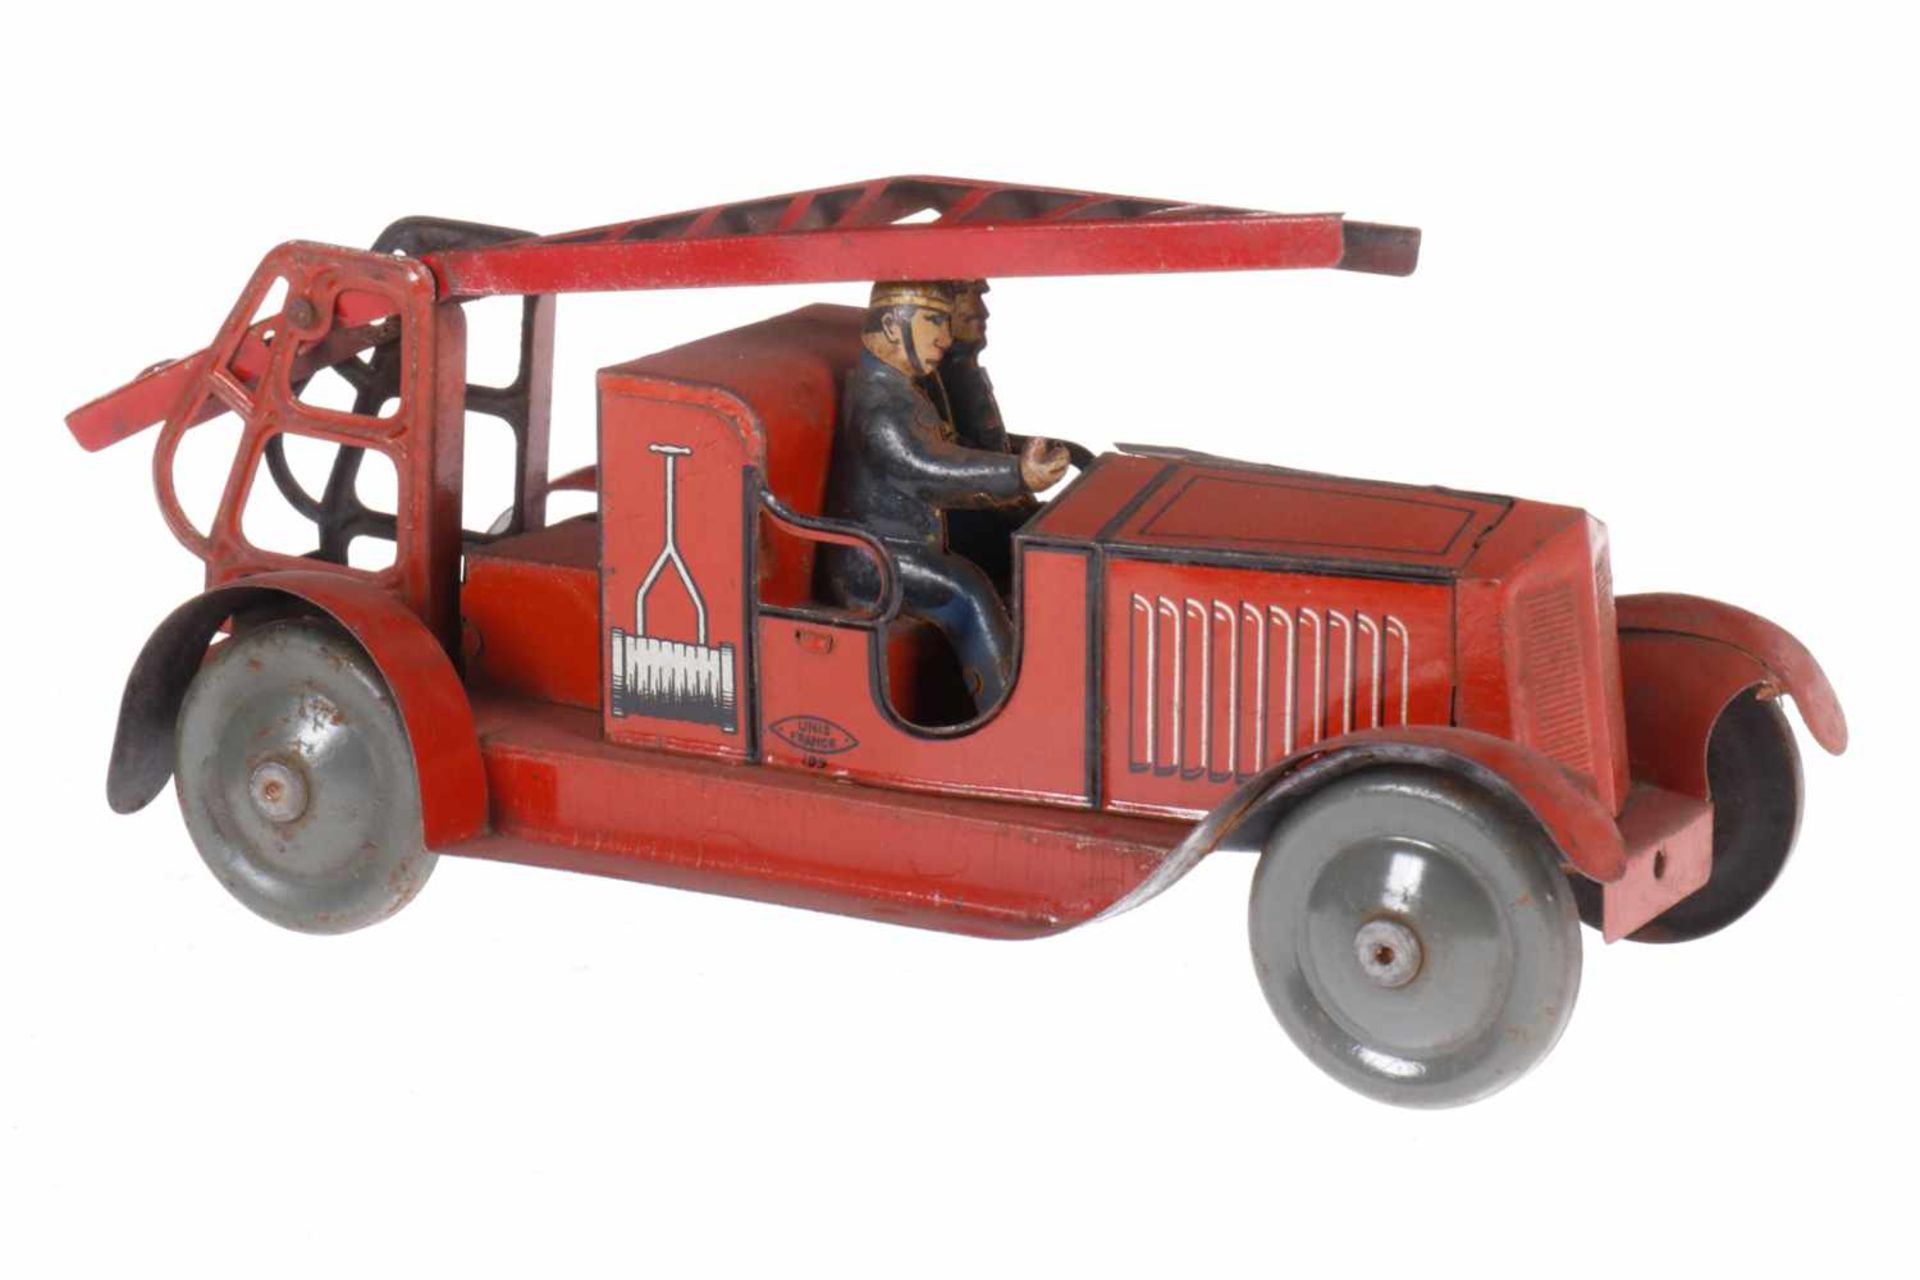 JEP Feuerwehr-Leiterwagen, Unis France Nr. 199, CL, mit 2 Fahrern, RS, Leiter verbogen, Uhrwerk